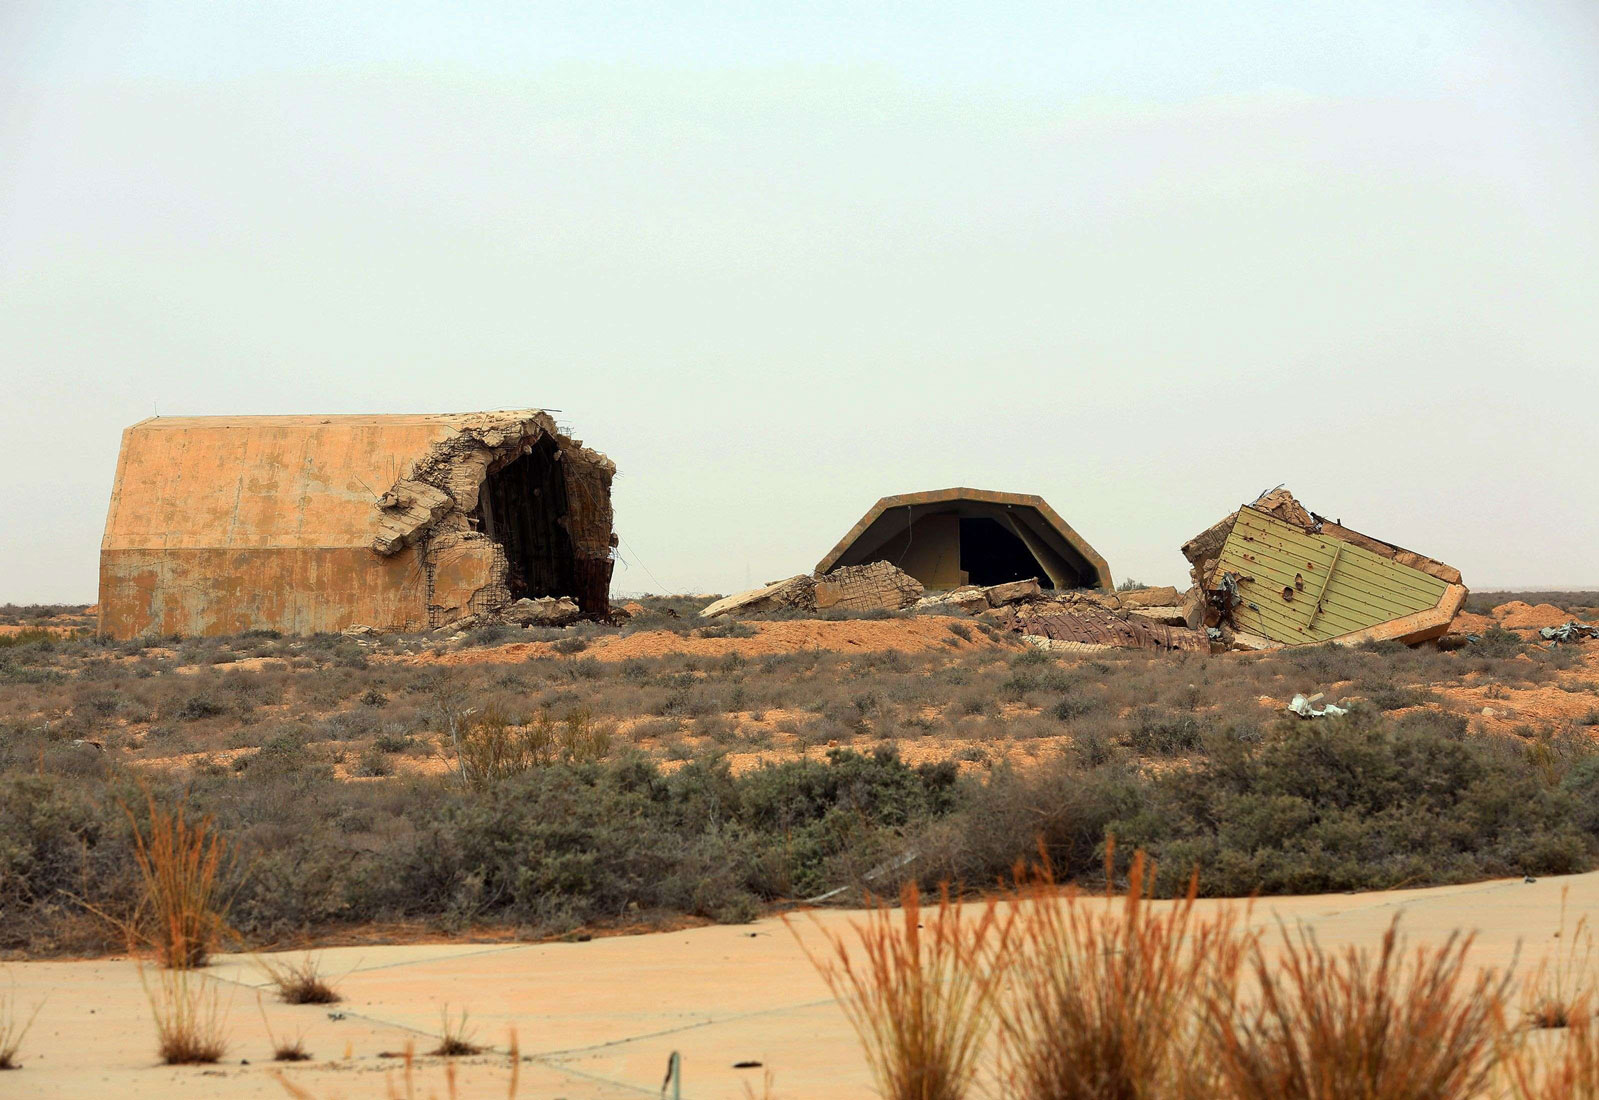 الطائرات المسيرة الانتحارية والقواعد الجوية في غرب ليبيا ستستخدم لتهديد امن المنطقة